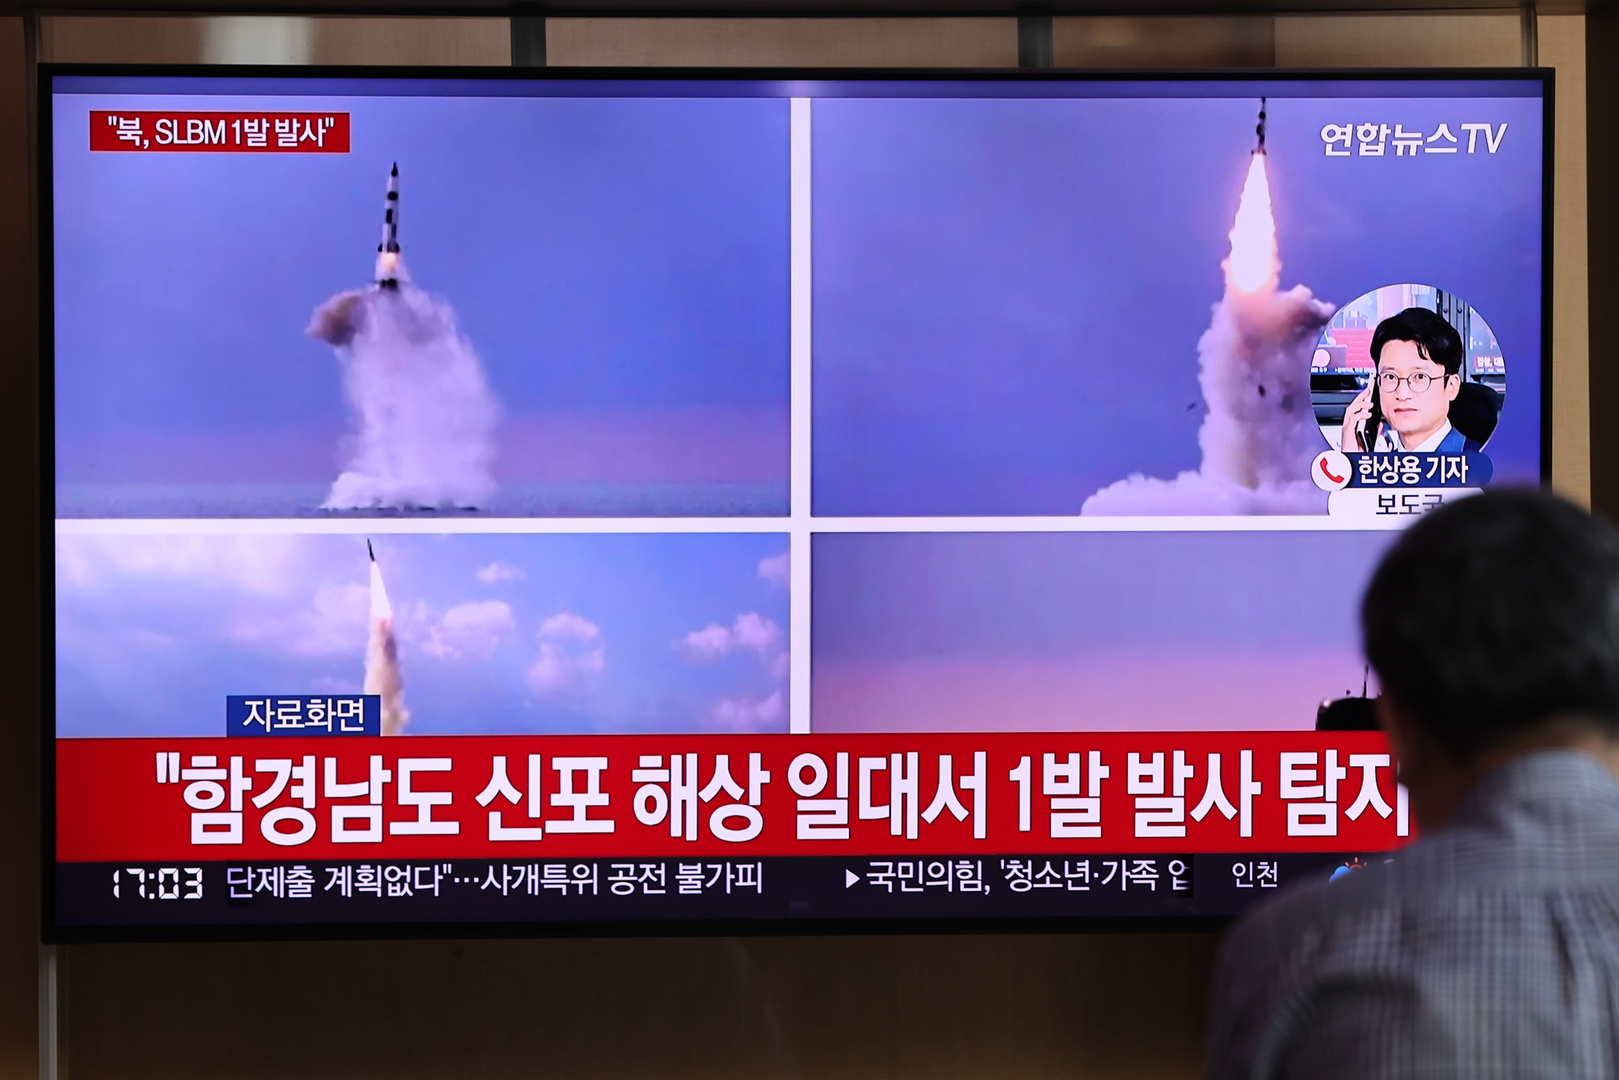 سي إن إن: بيونغ يانغ تعتزم إجراء تجربة لصاروخ عابر للقارات أثناء زيارة بايدن لسيؤول